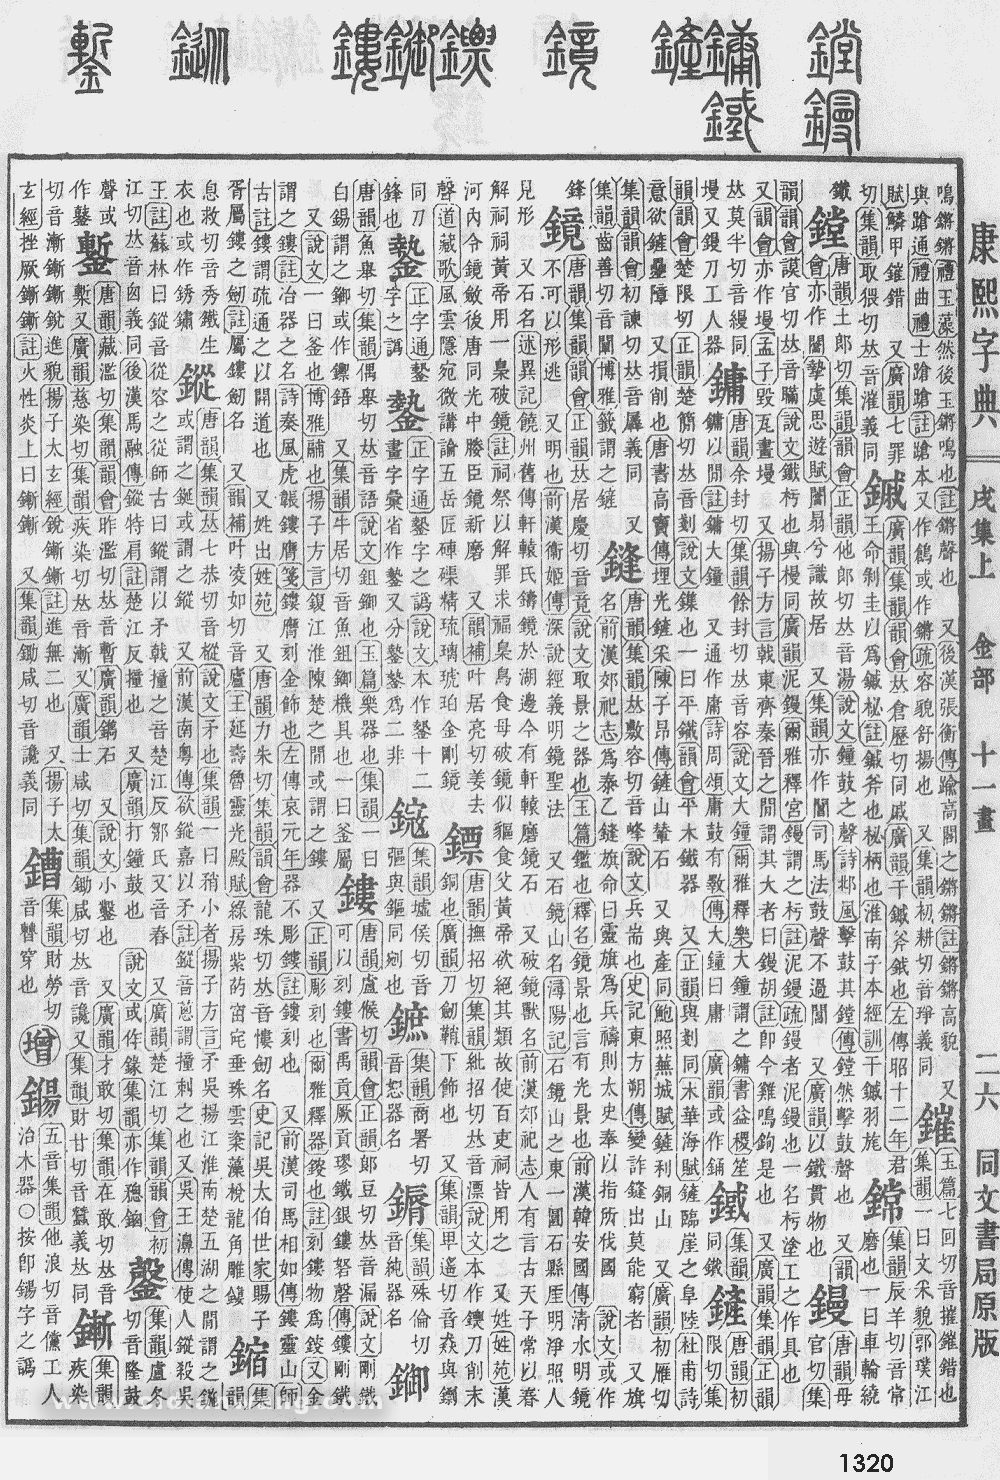 康熙字典掃描版第1320頁